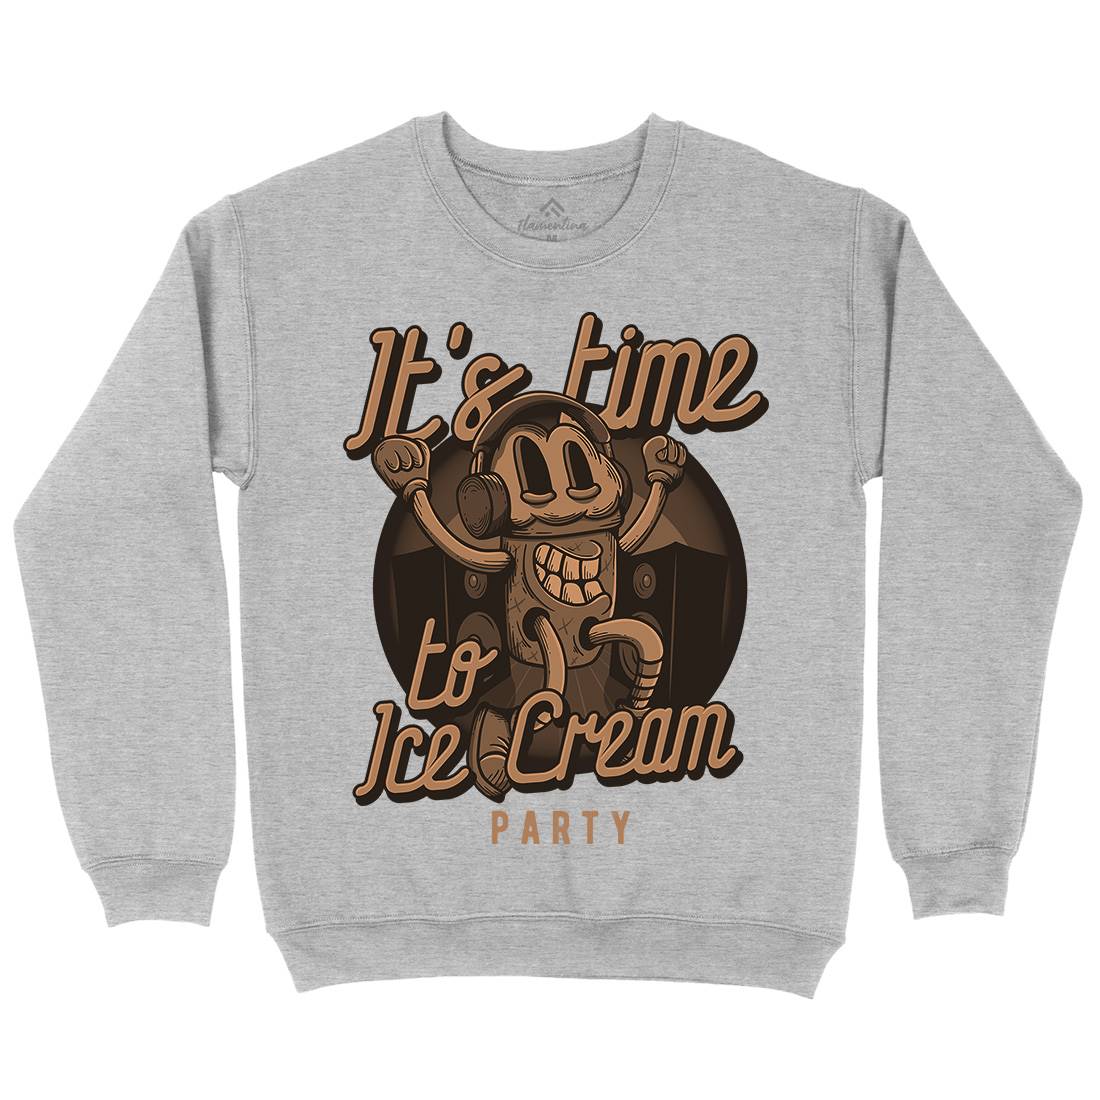 It&#39;s Time Kids Crew Neck Sweatshirt Food D950